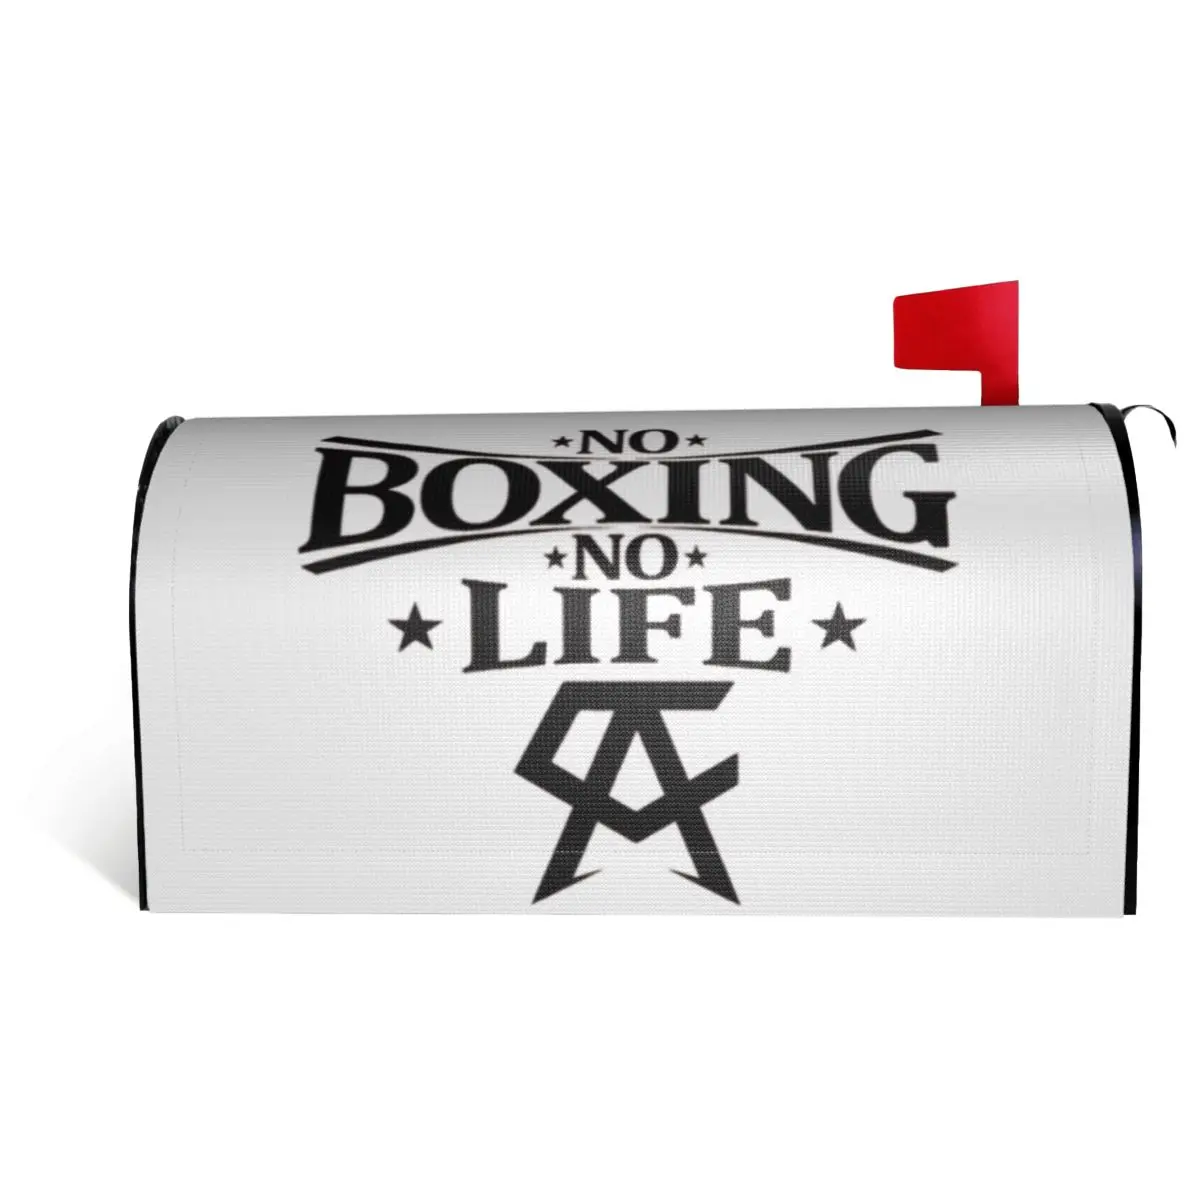 

Canelos Alvarez No Boxing No Life Essential Mailbox Cover Vintage Postbox Graphic R257 correspondence